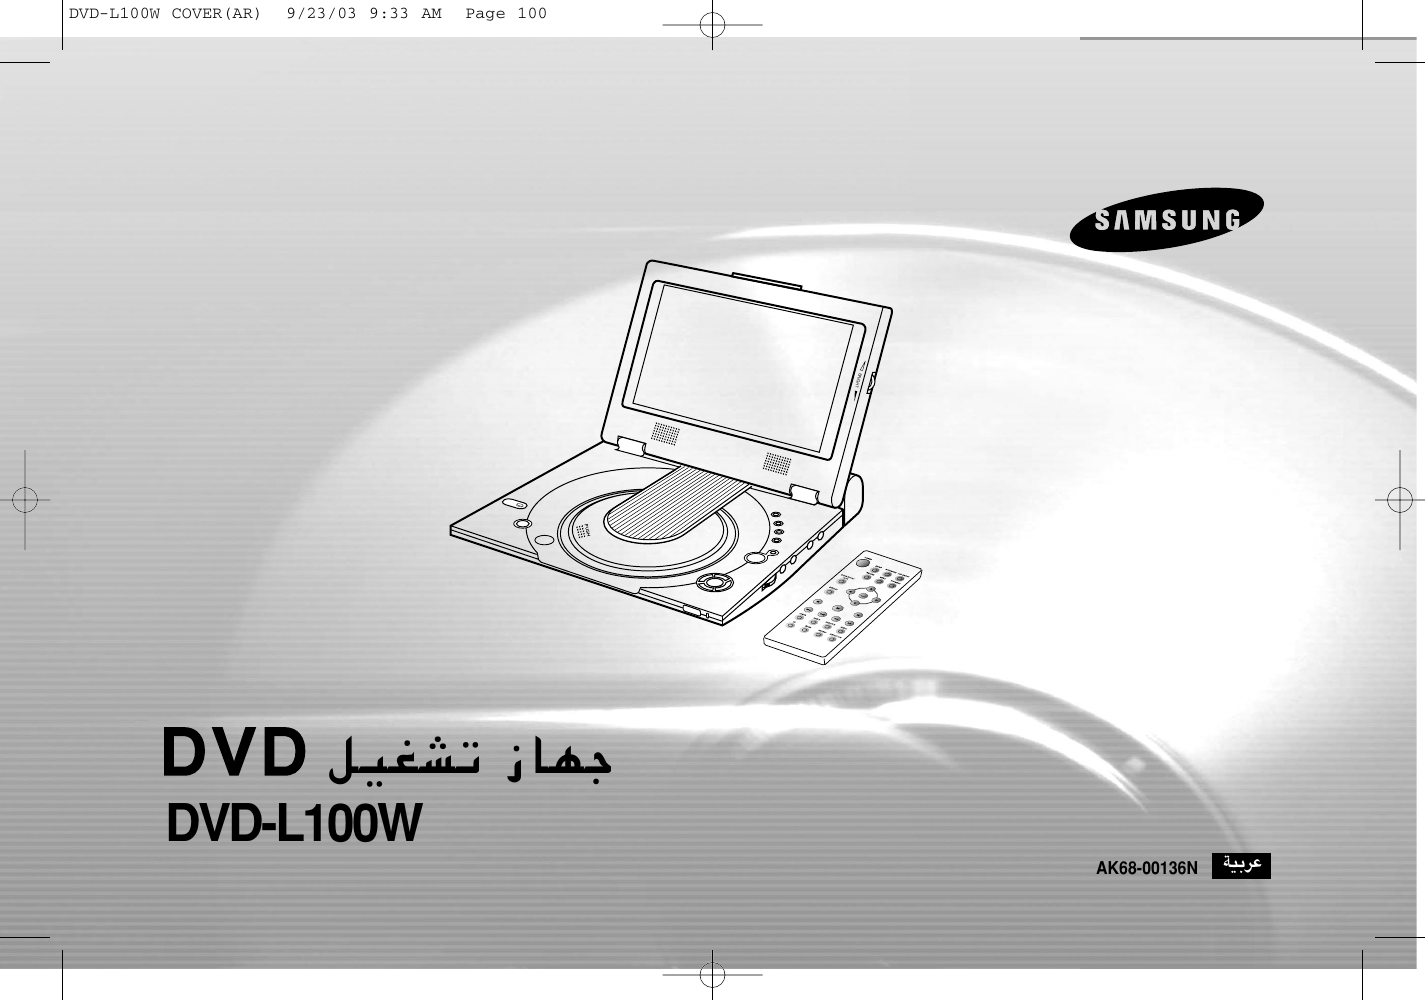 Samsung Dvd L100w Ar n L100w n L100war